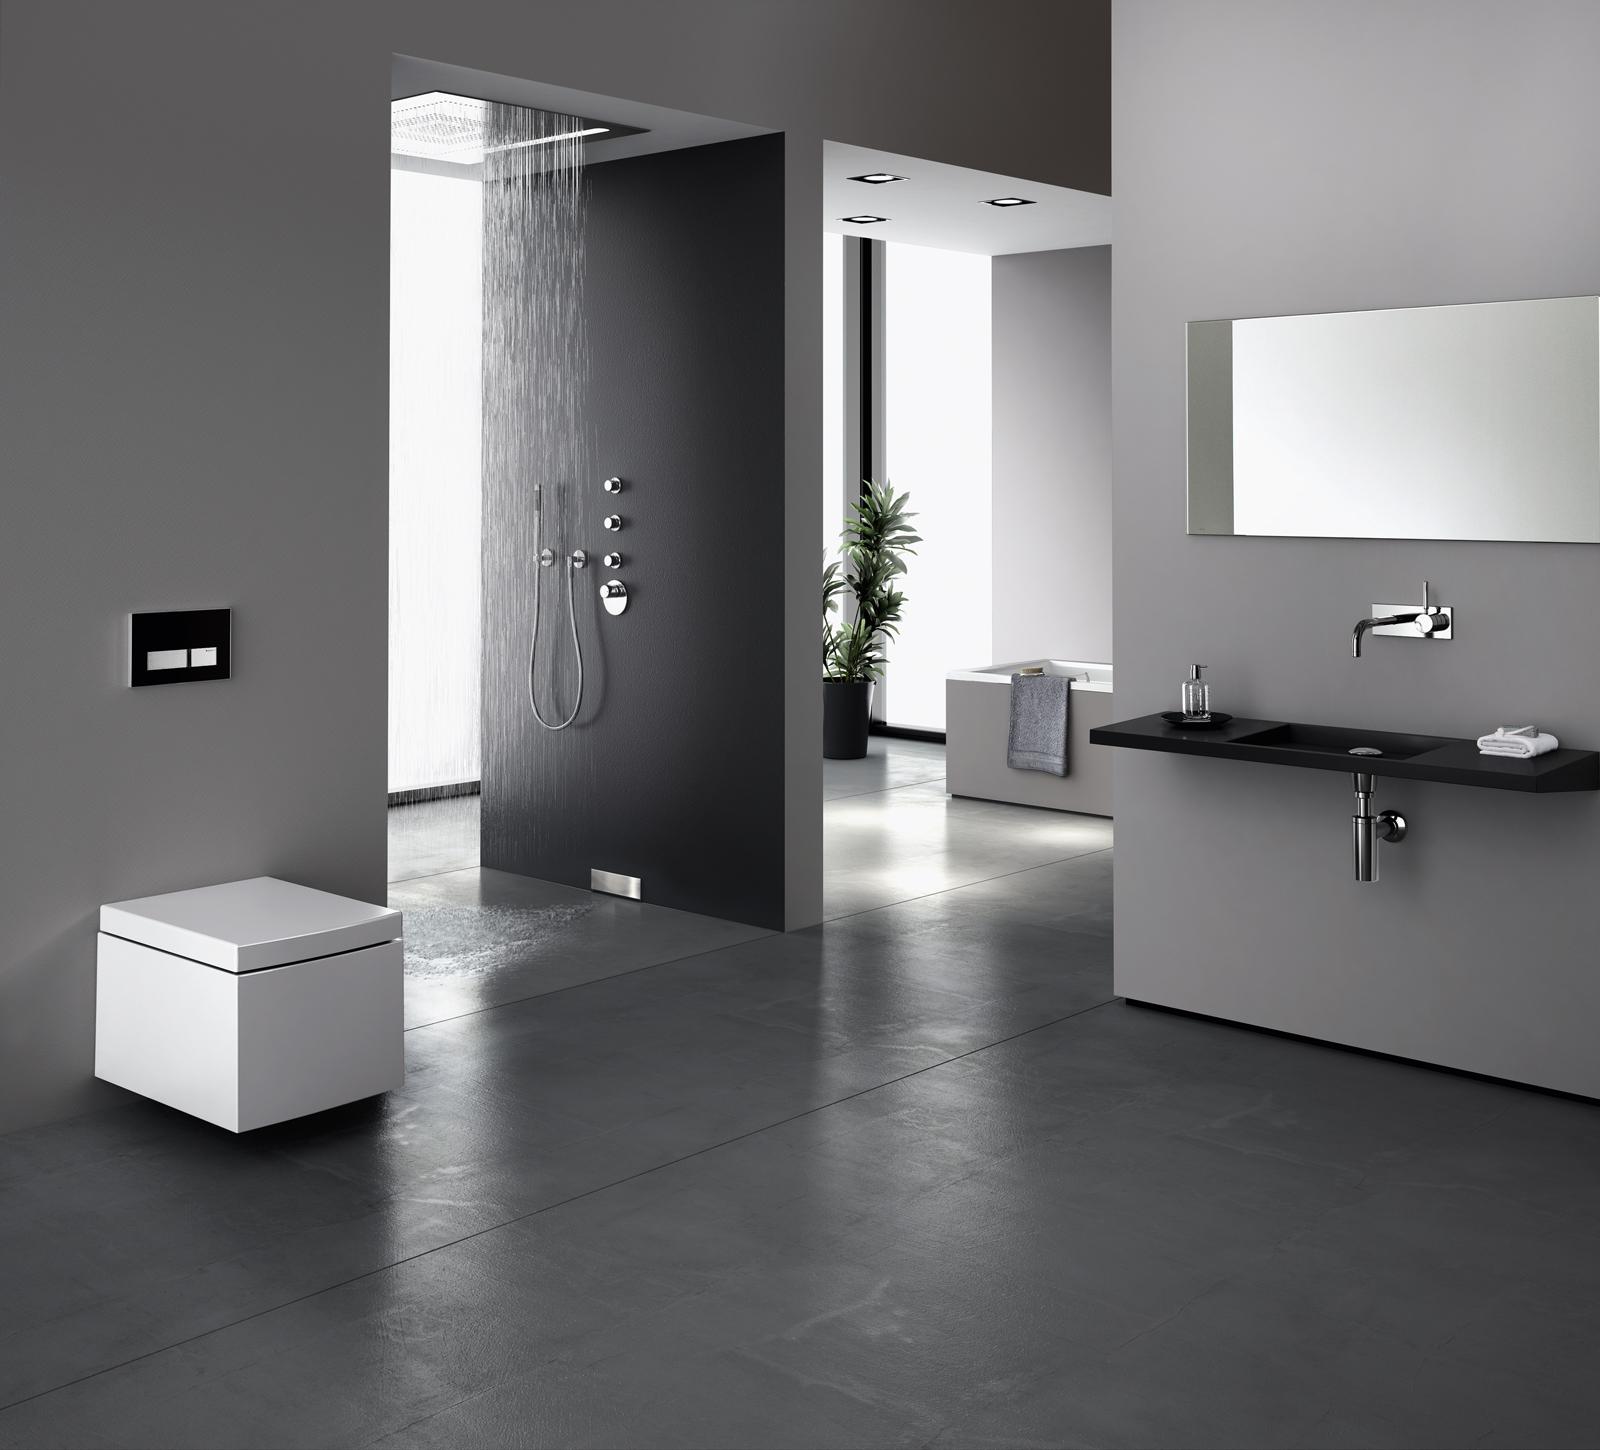 Modernes Badezimmer #badezimmer #grauesbadezimmer #modernesbadezimmer #badezimmergestalten ©Geberit